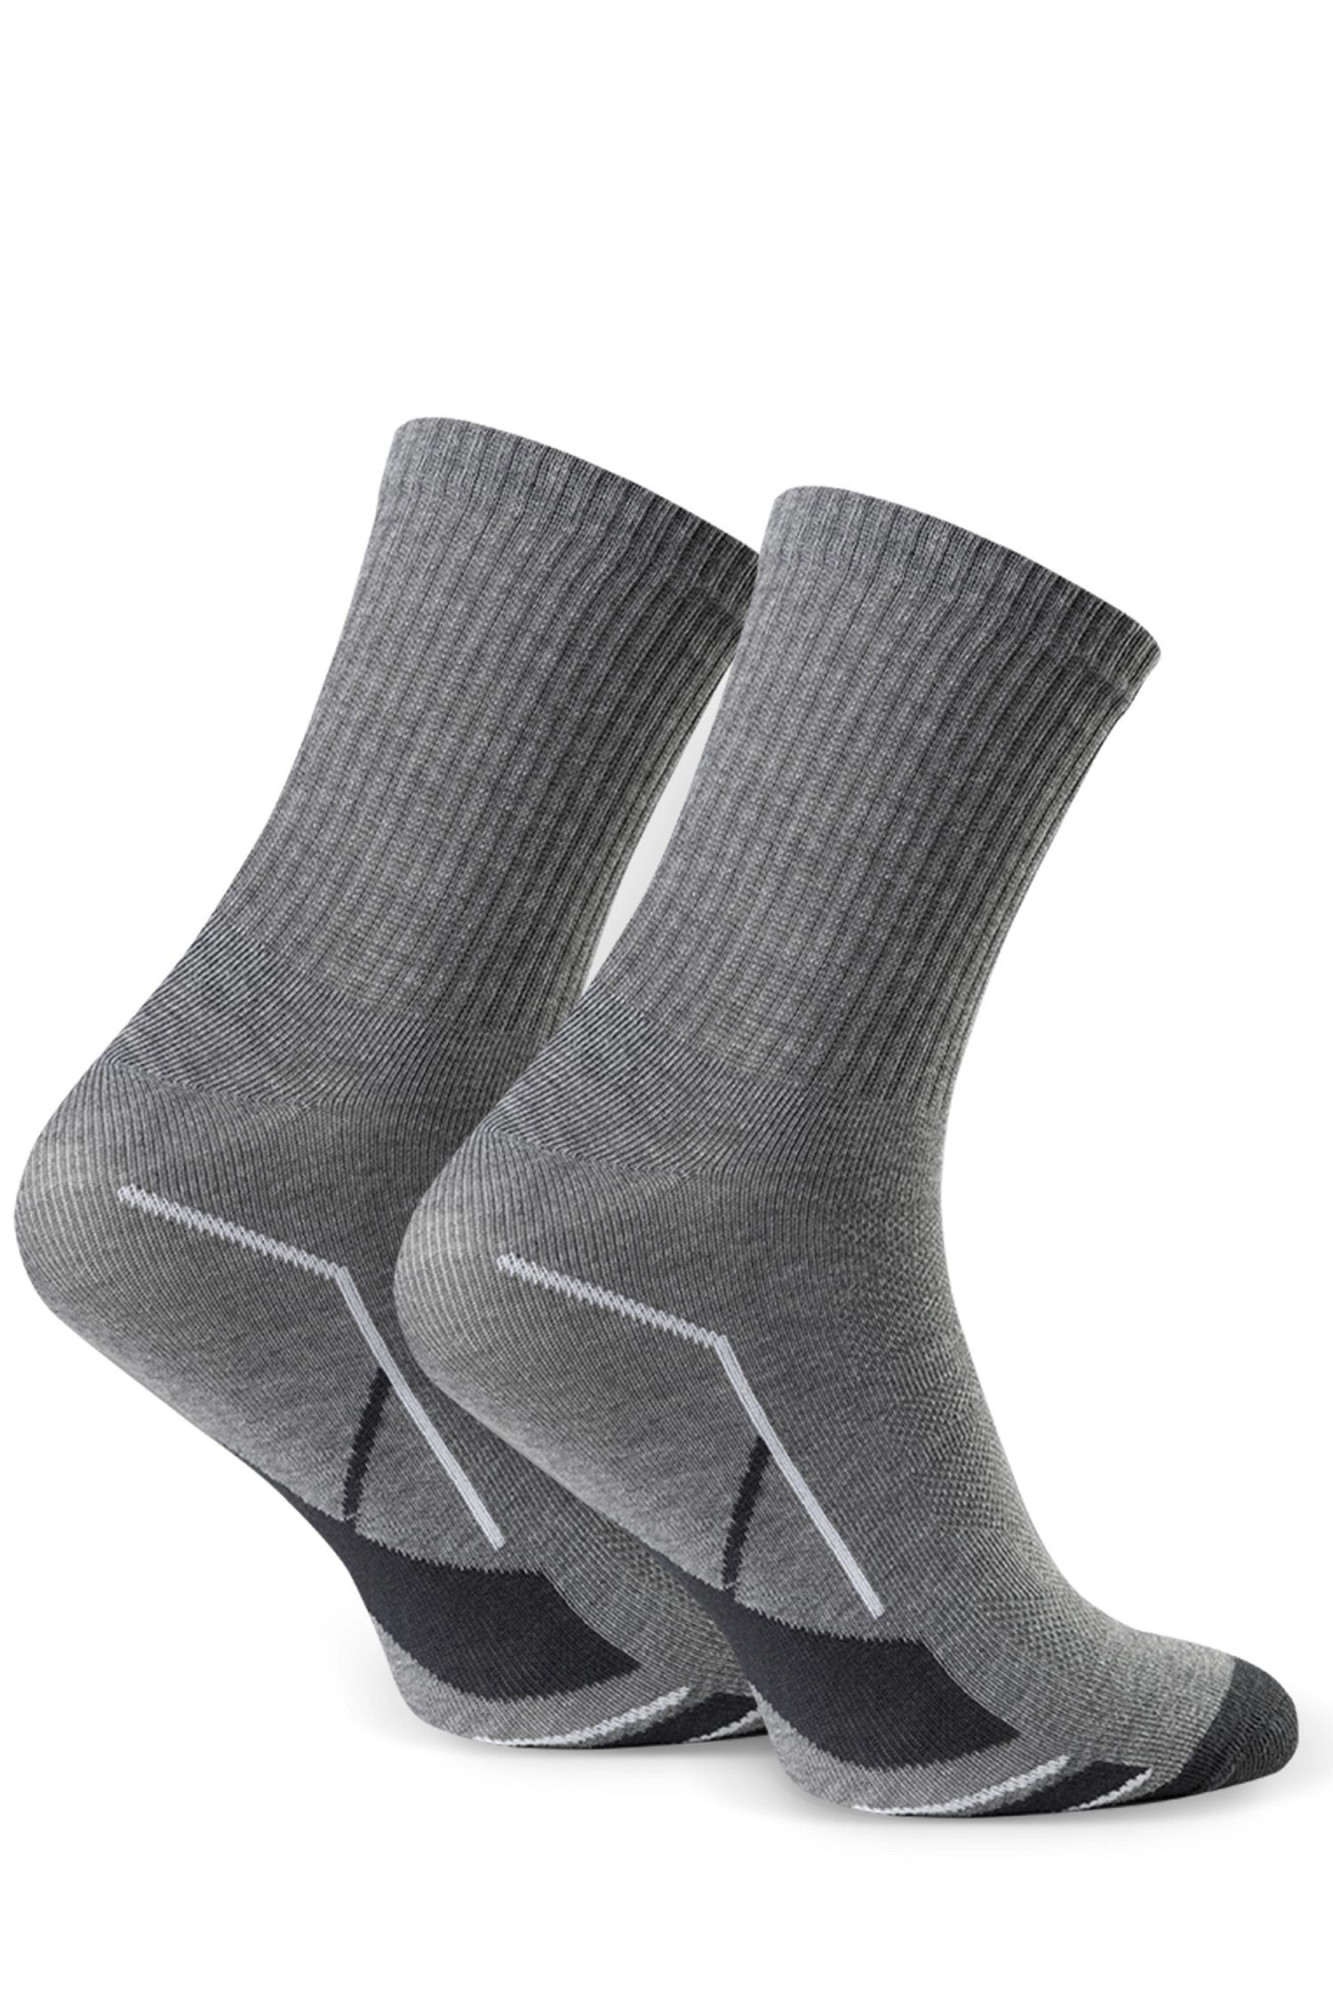 Dětské ponožky 022 317 grey - Steven šedá 35/37